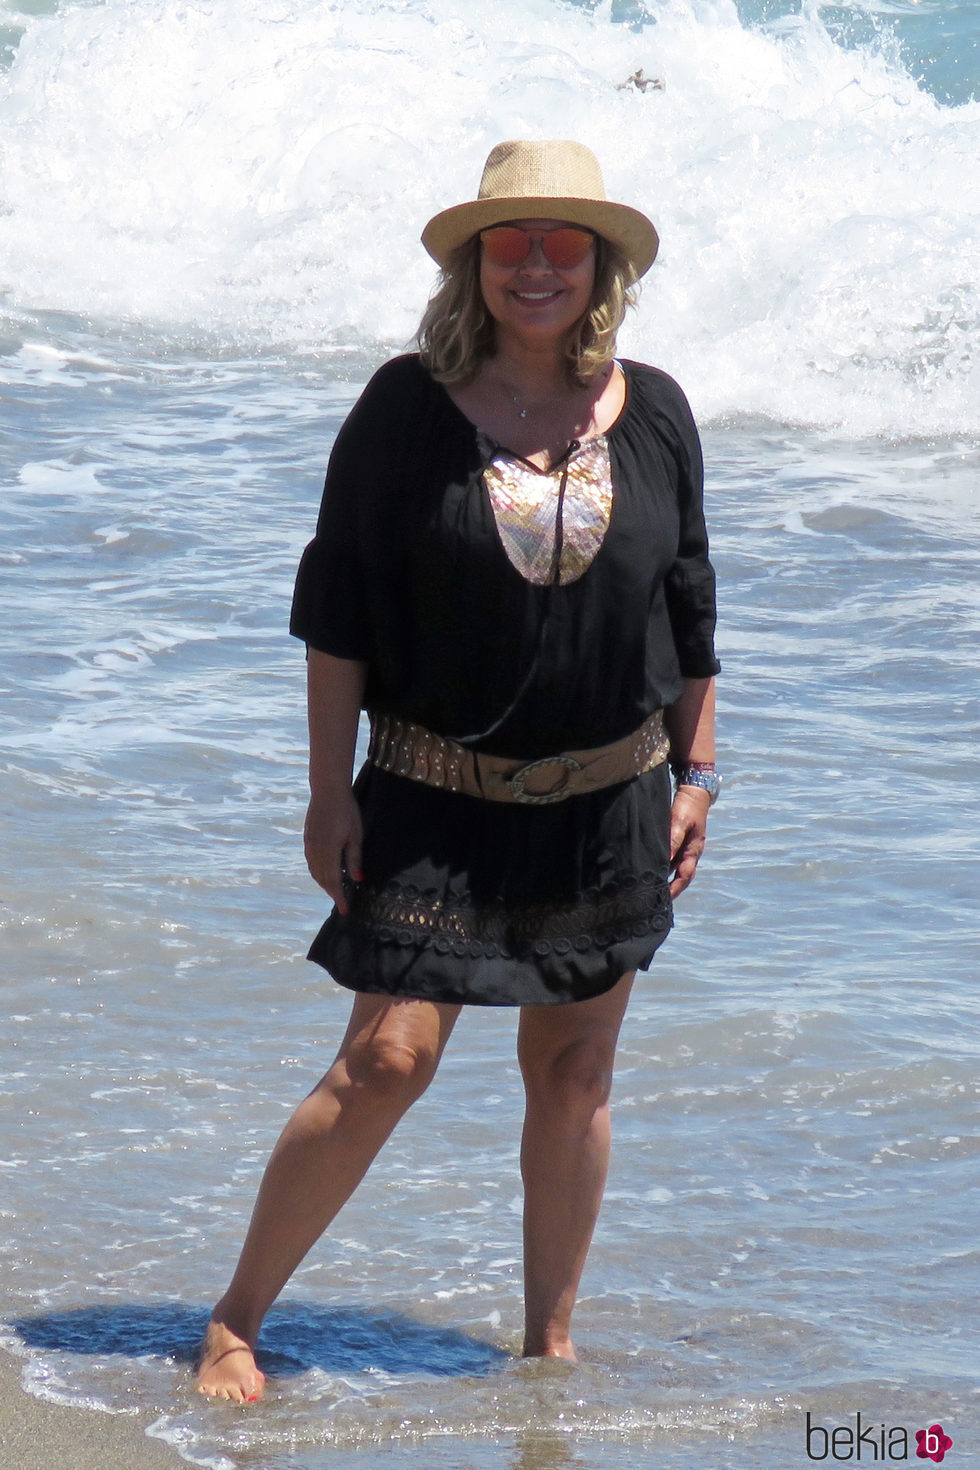 Terelu Campos posando durante una jornada de playa en Marbella